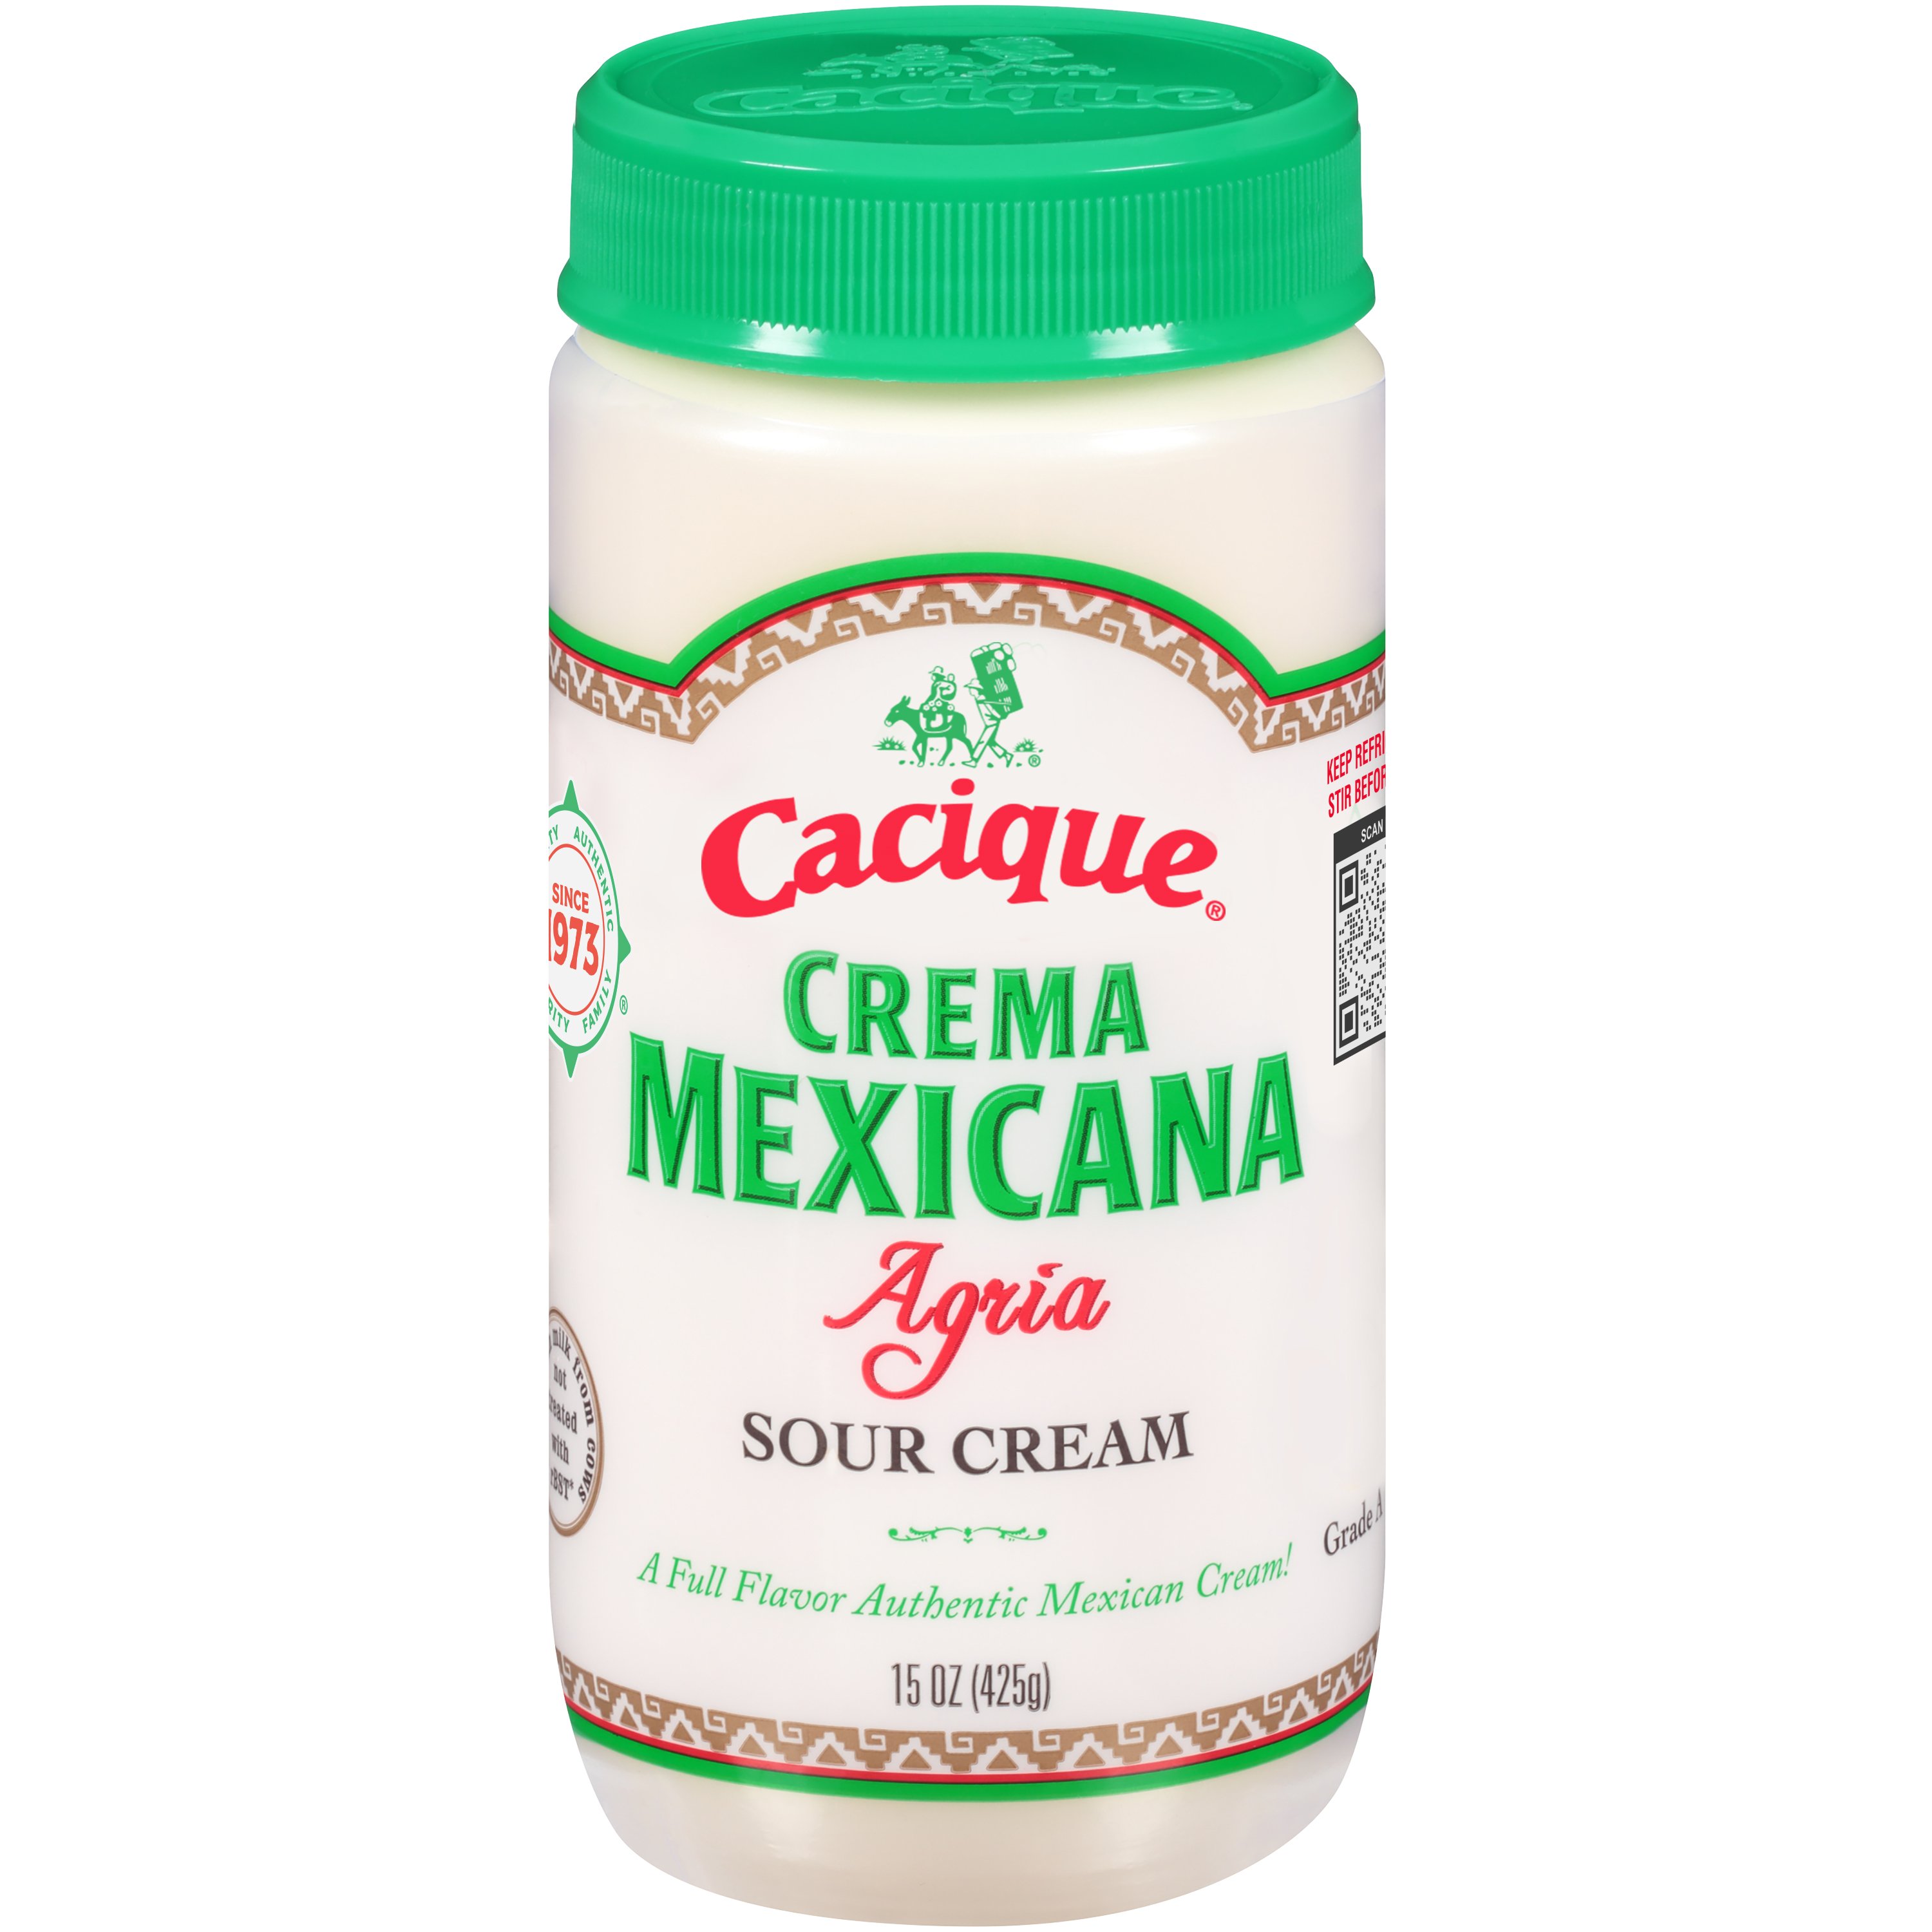 Cacique Crema Mexicana Agria Sour Cream - Shop Sour Cream at H-E-B